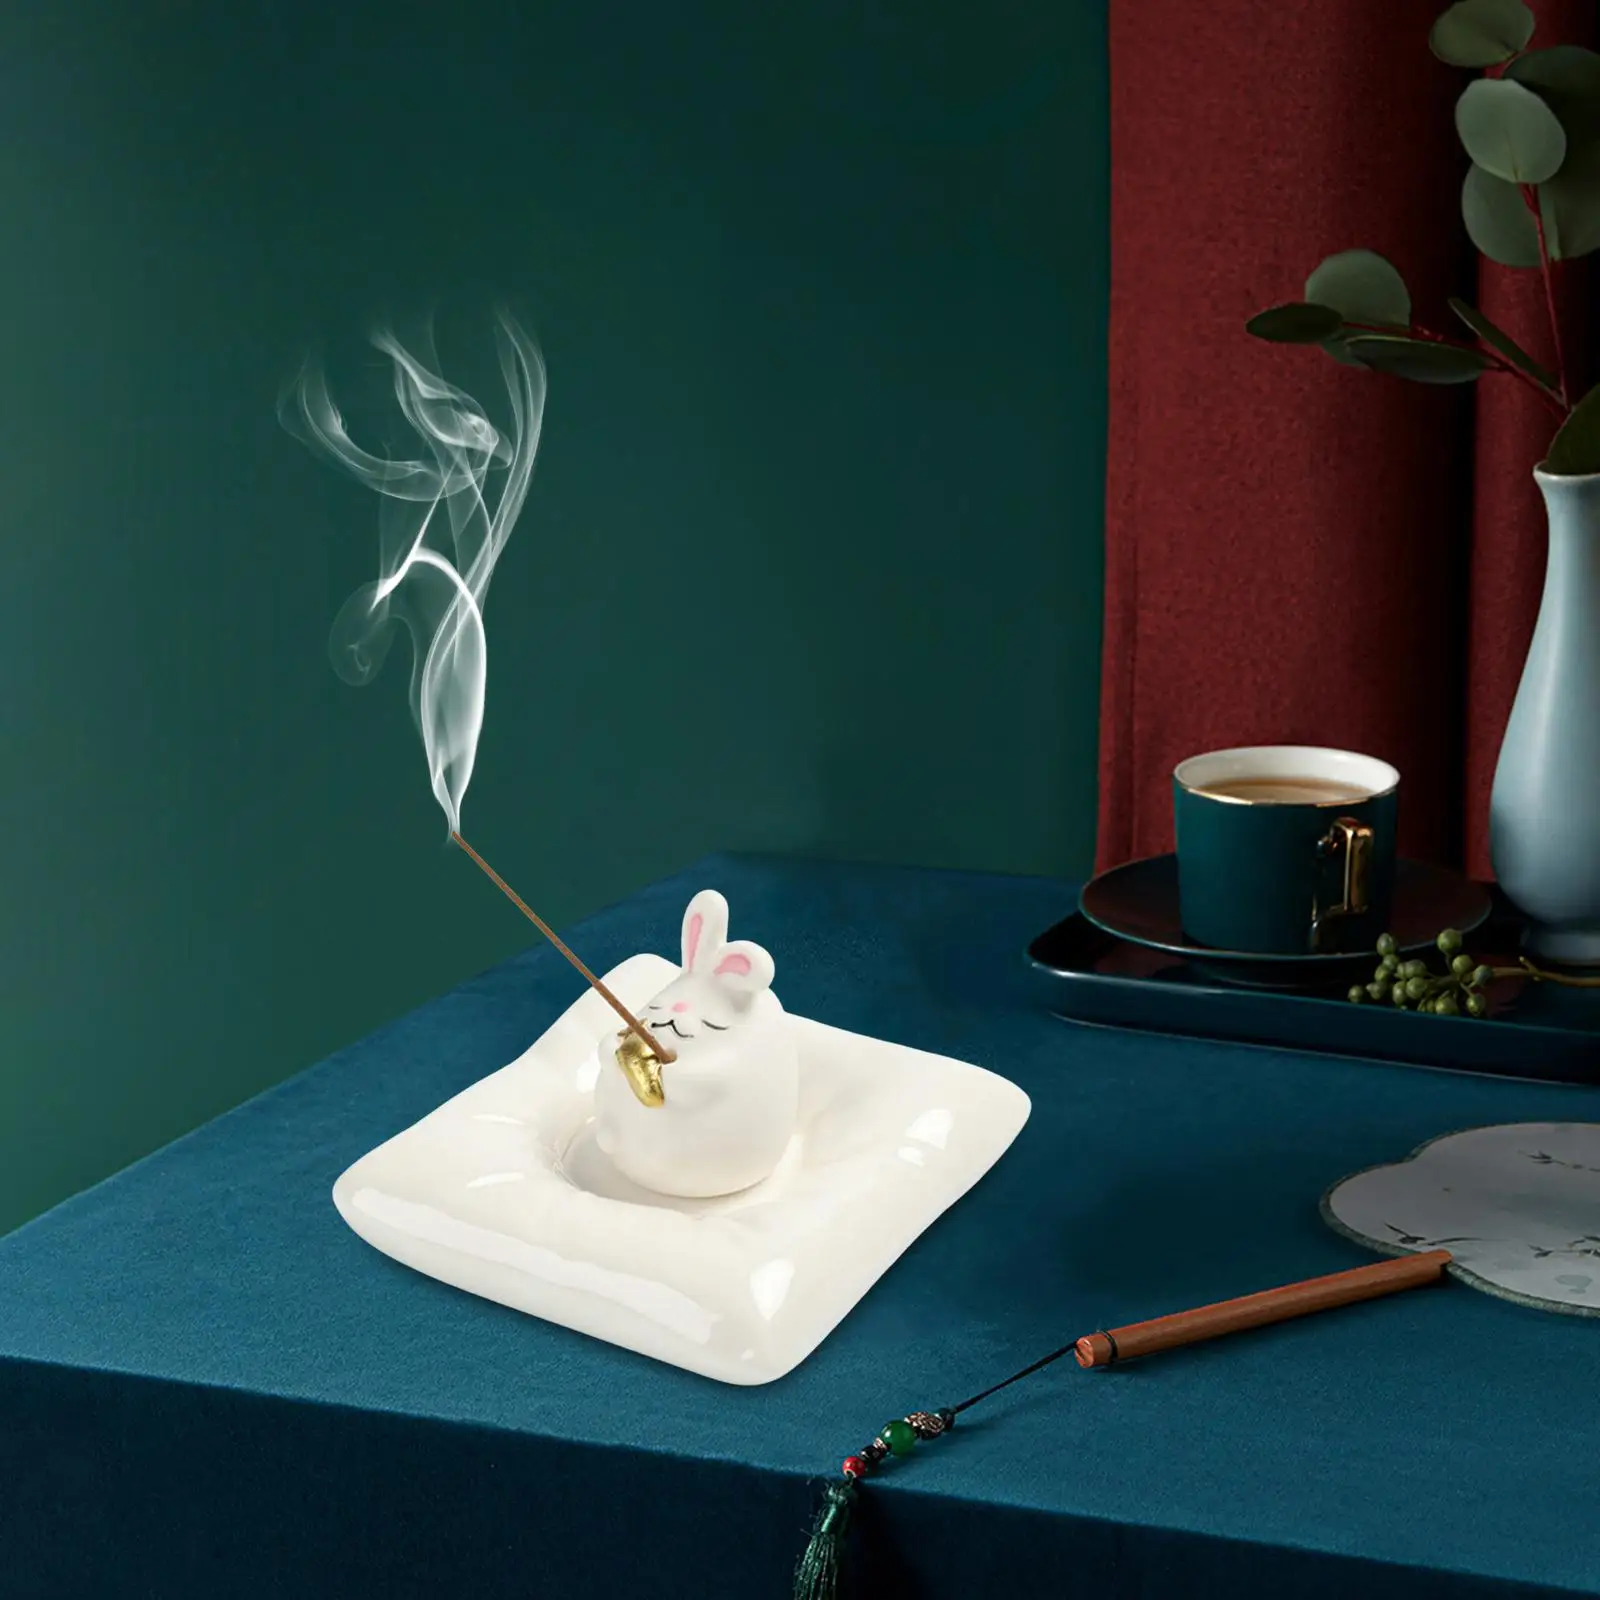 incenses Burner Decorative Craft Handmade Holder for Gift Yoga Office Tea Room Bedroom